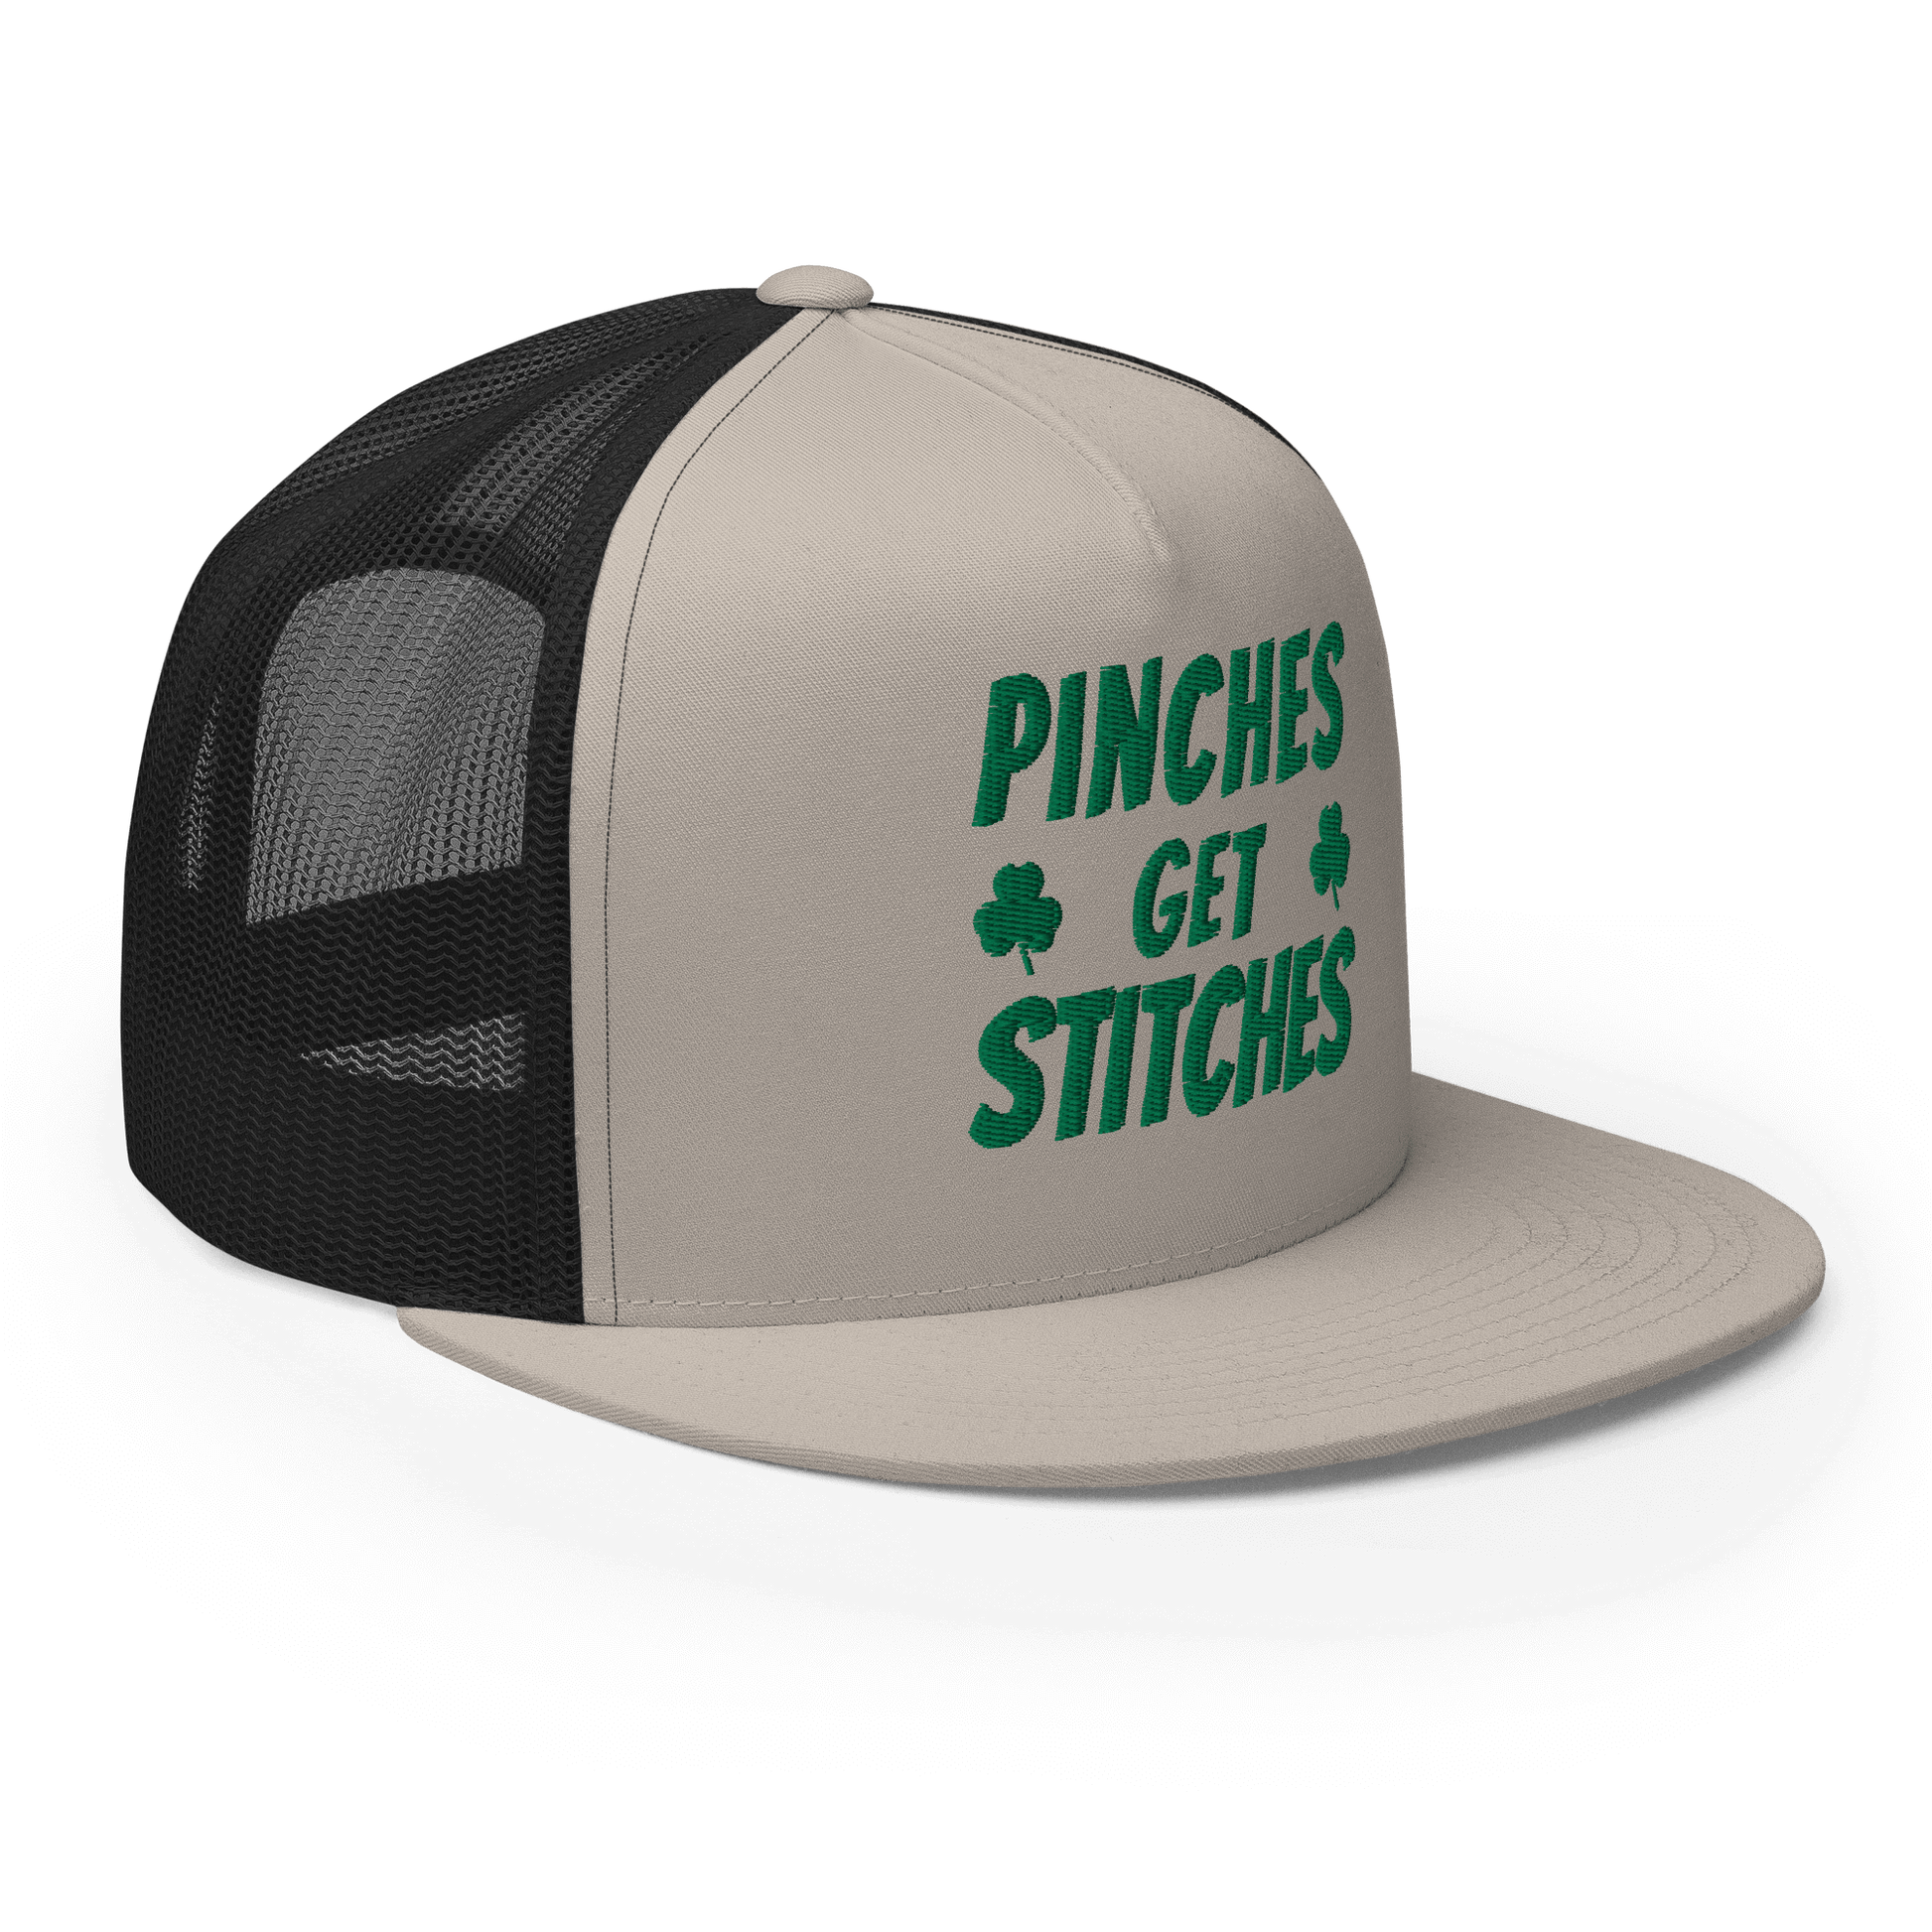 Pinches Get Stitches Trucker Cap